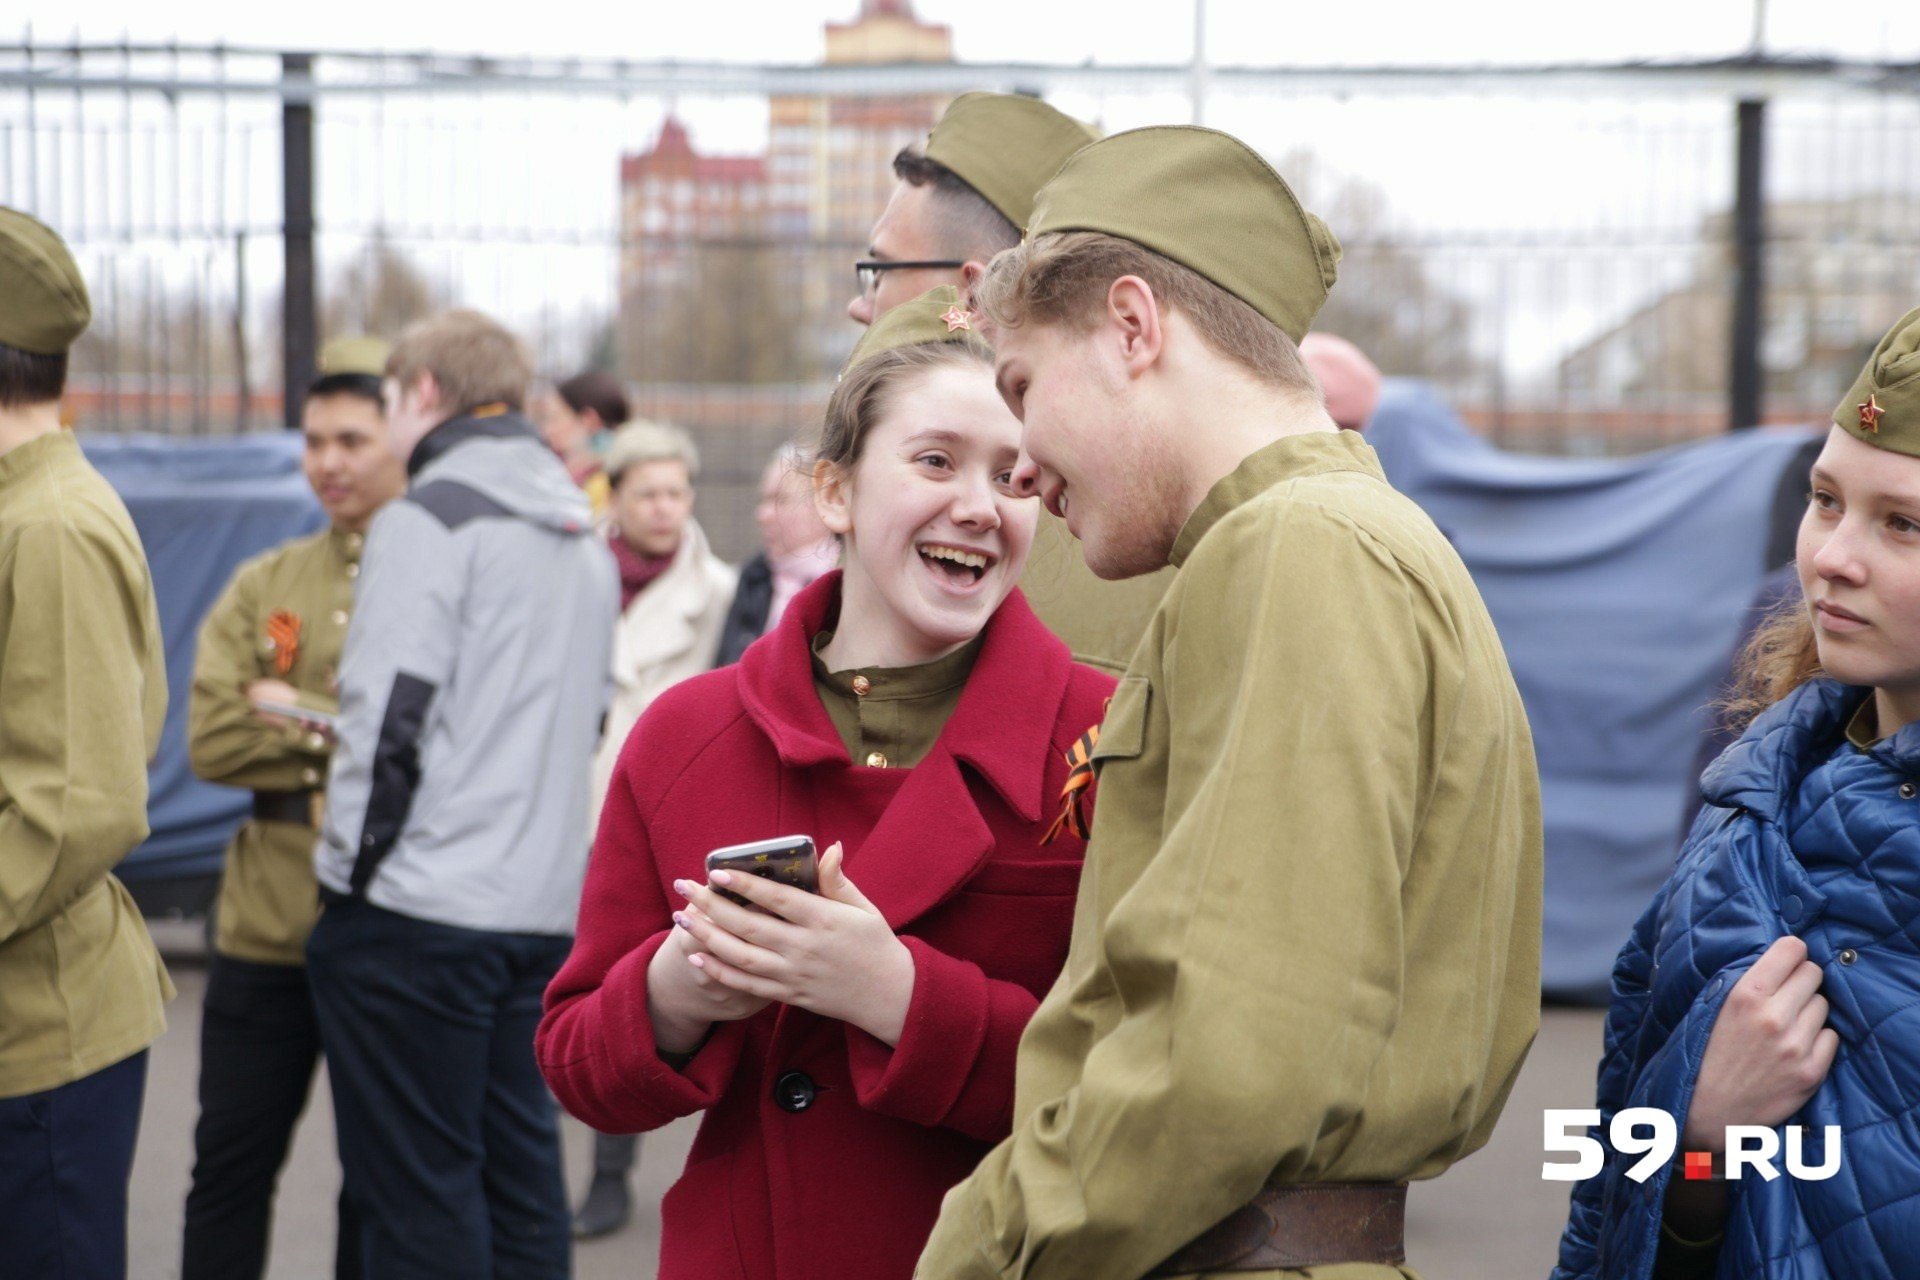 В парке Горького проходят праздничные мероприятия. Здесь выступают артисты в военной форме